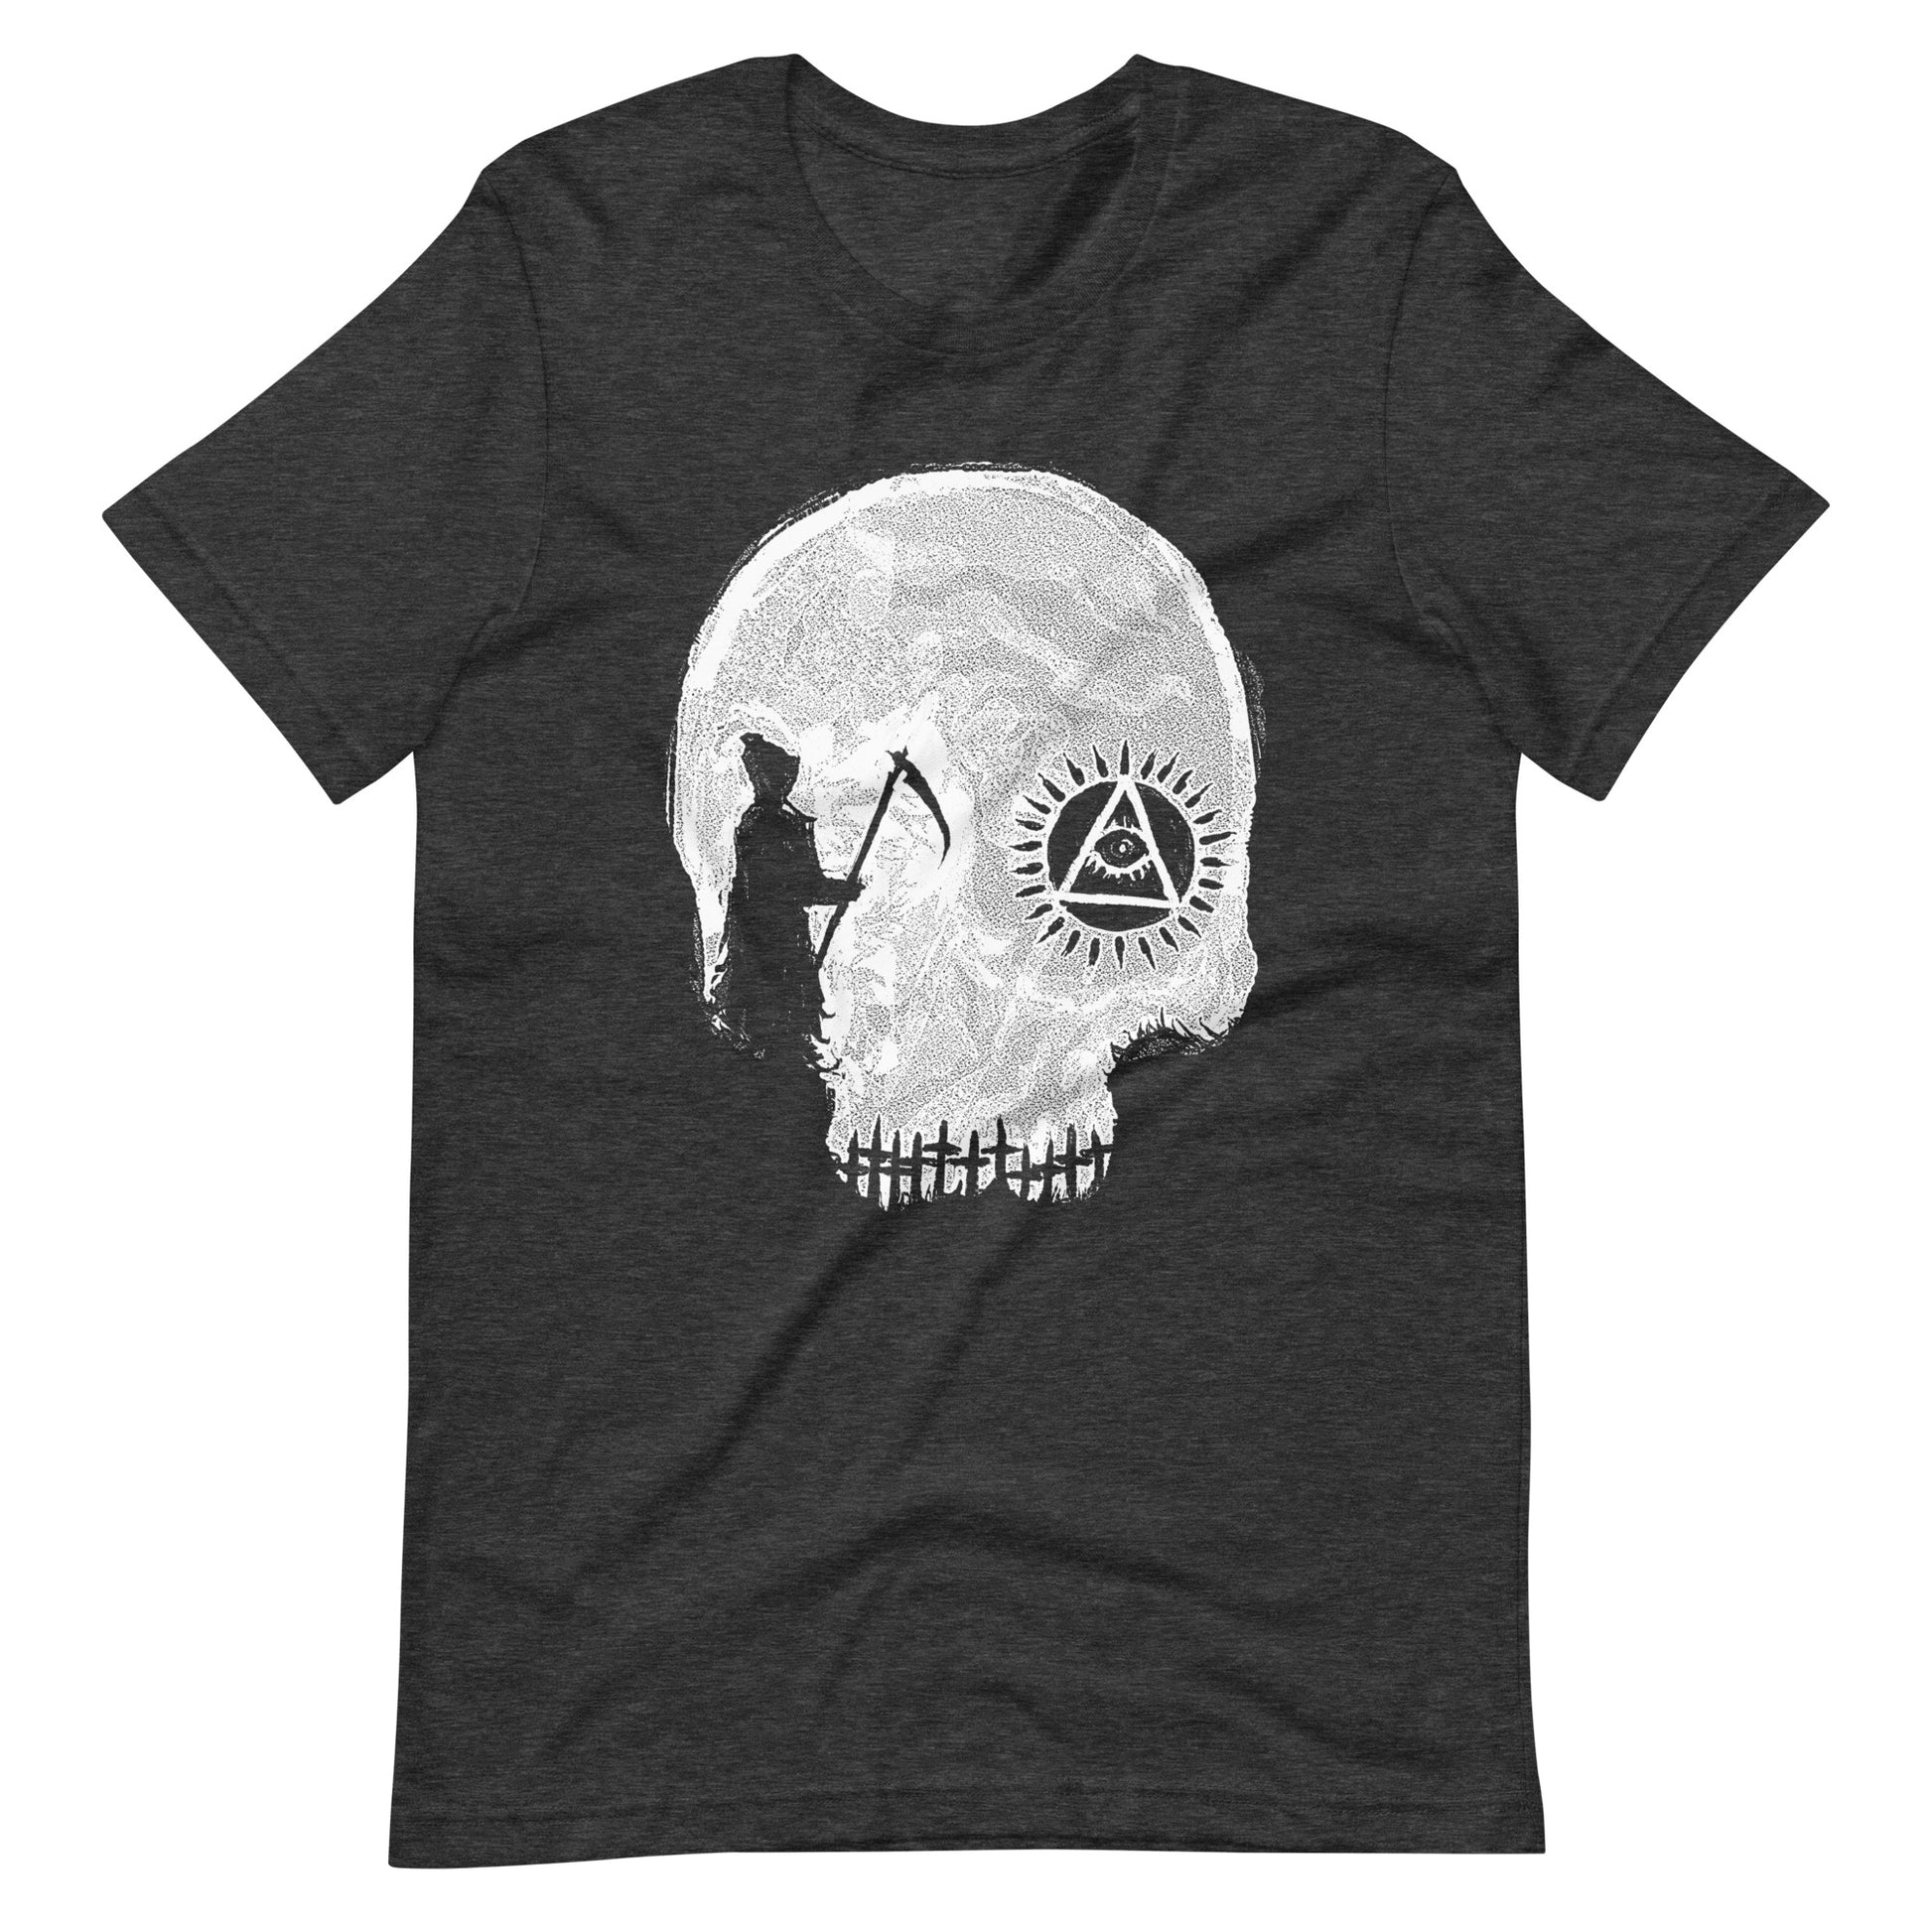 Death Row - Men's t-shirt - Dark Grey Heather Front